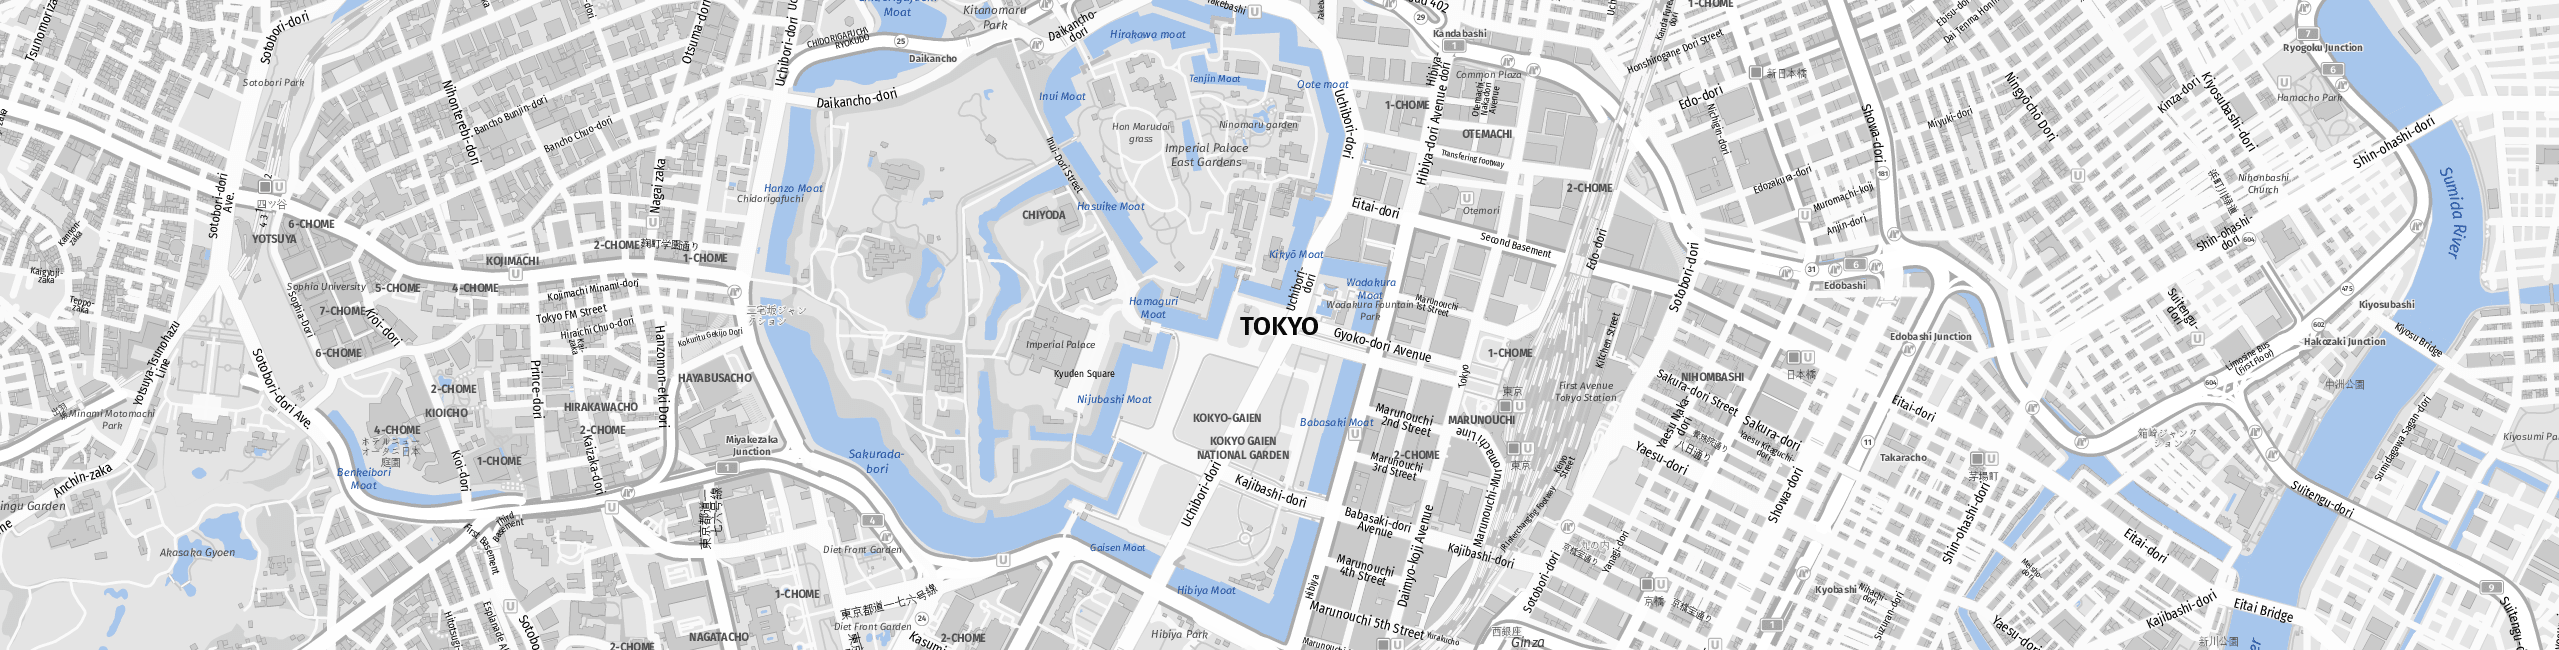 Stadtplan Tokio zum Downloaden.